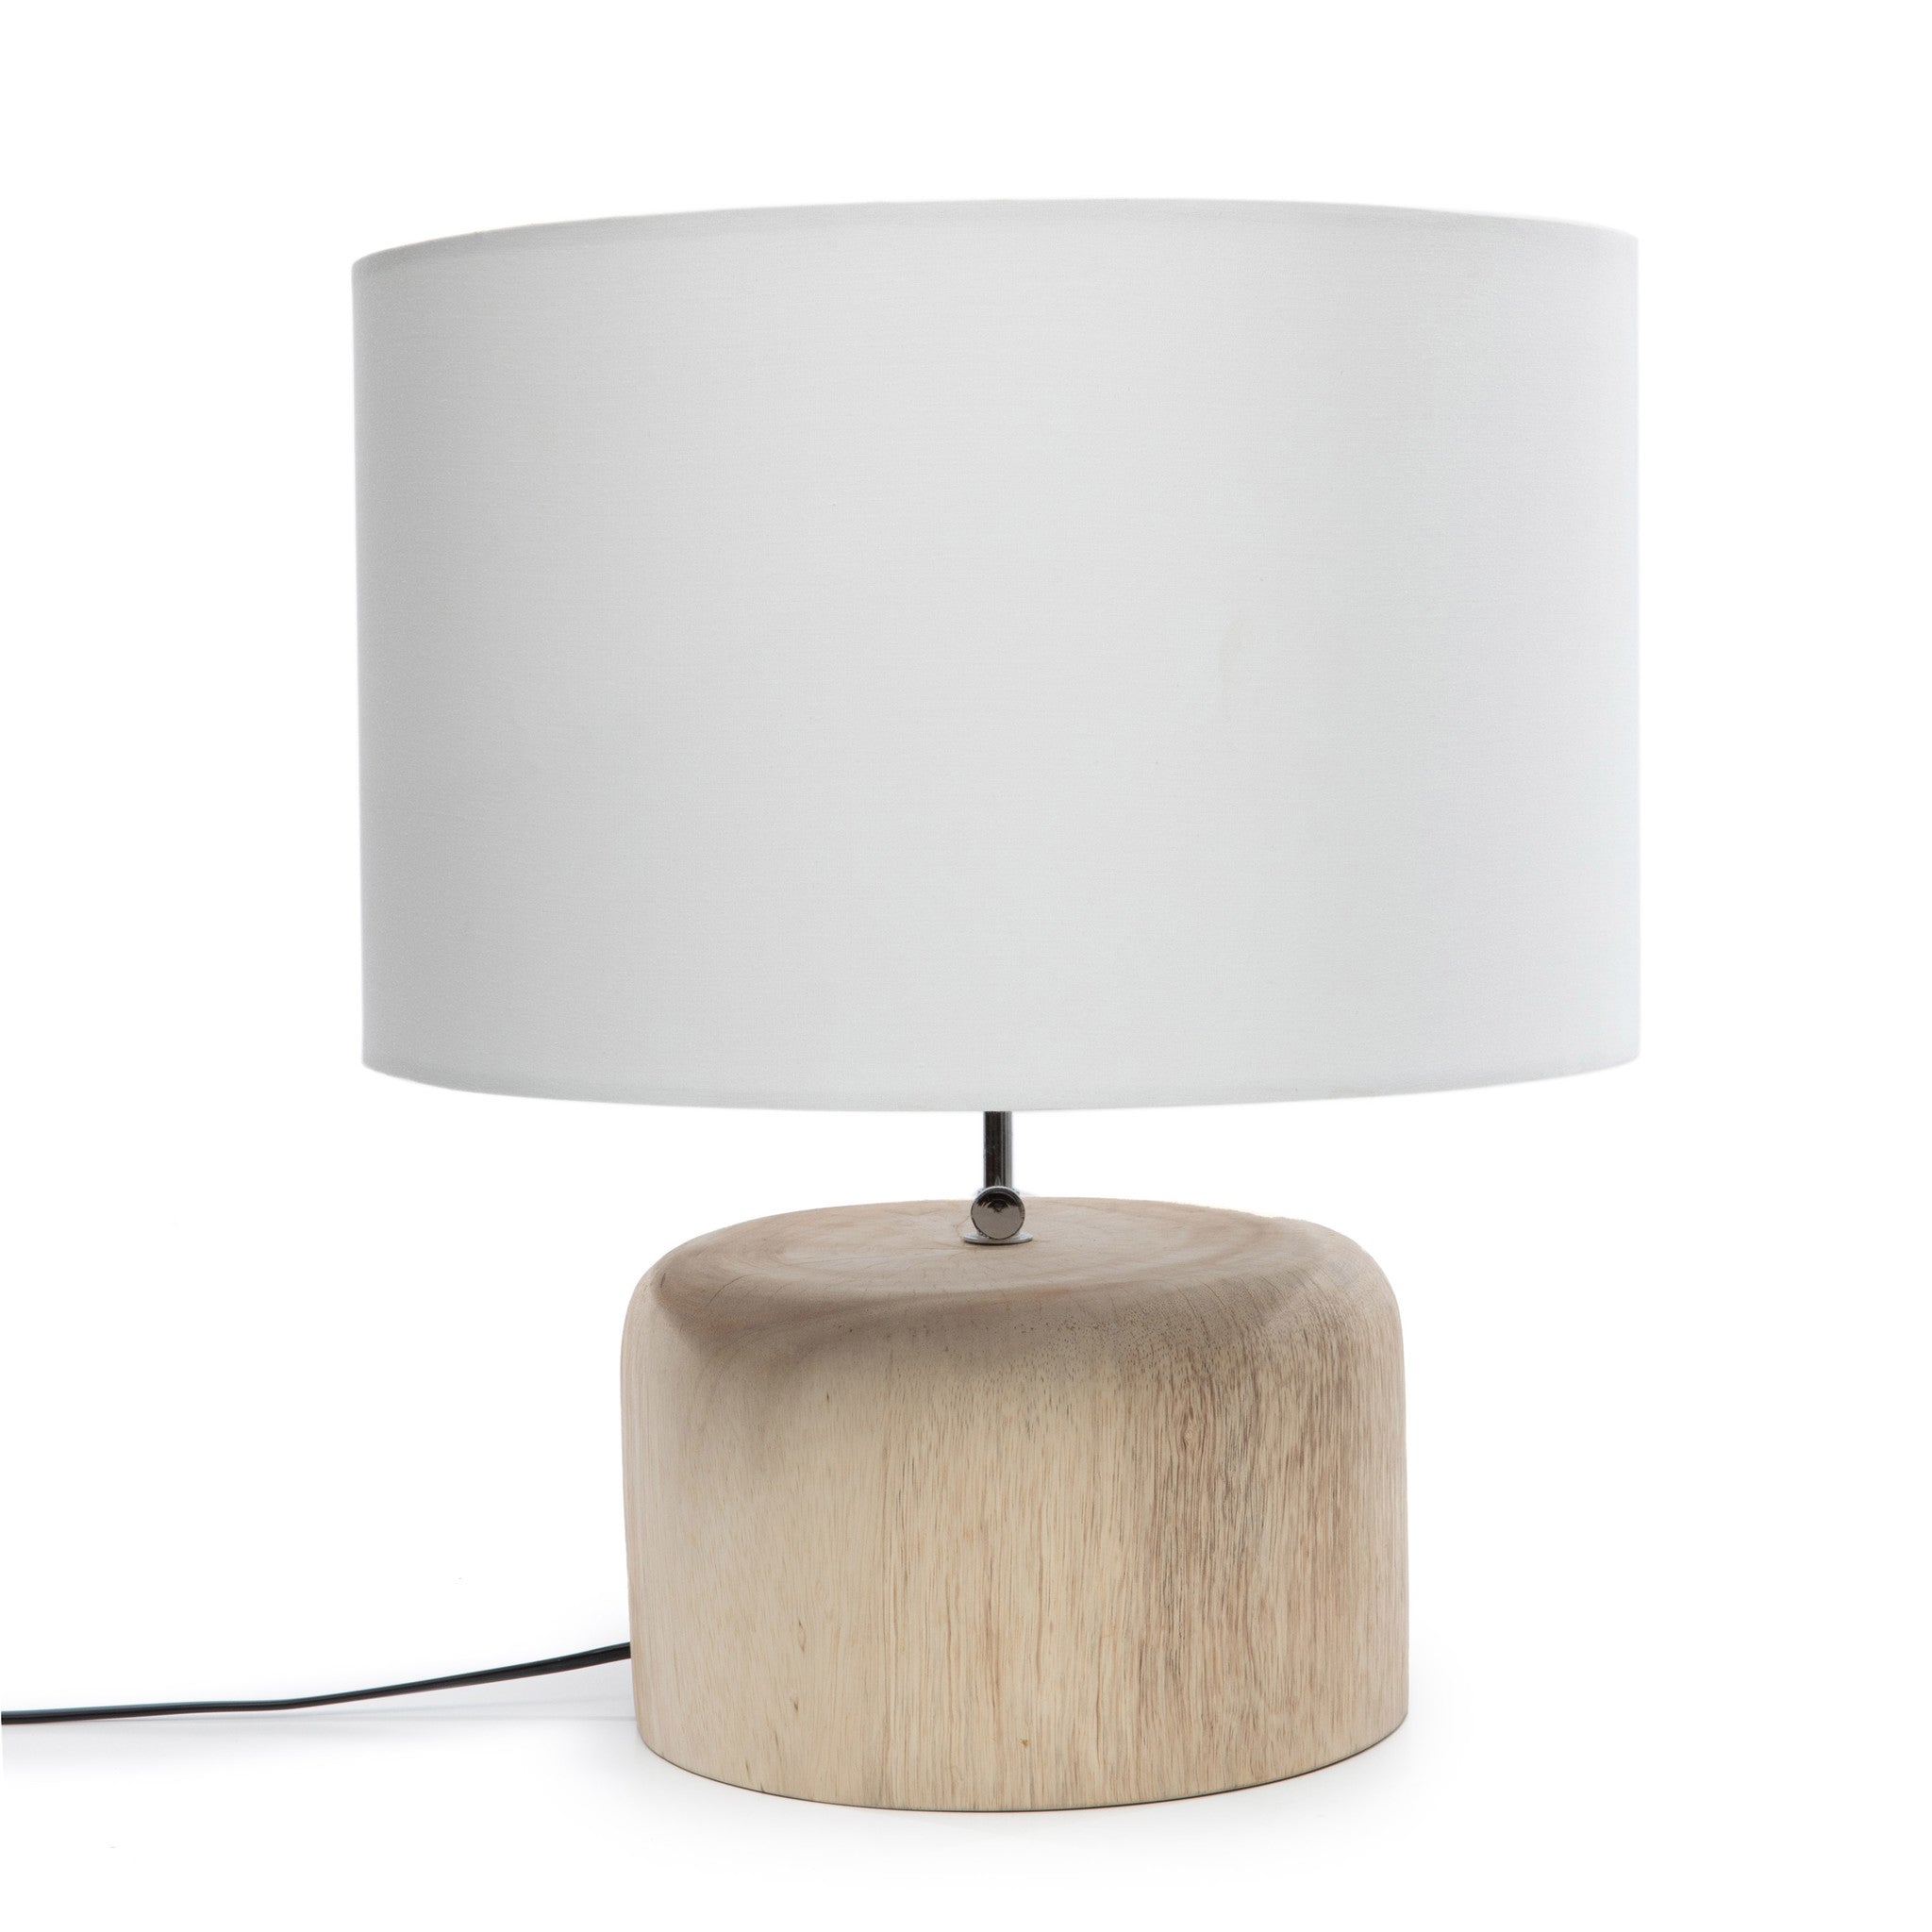 La lámpara de mesa en madera de teca - Blanco natural